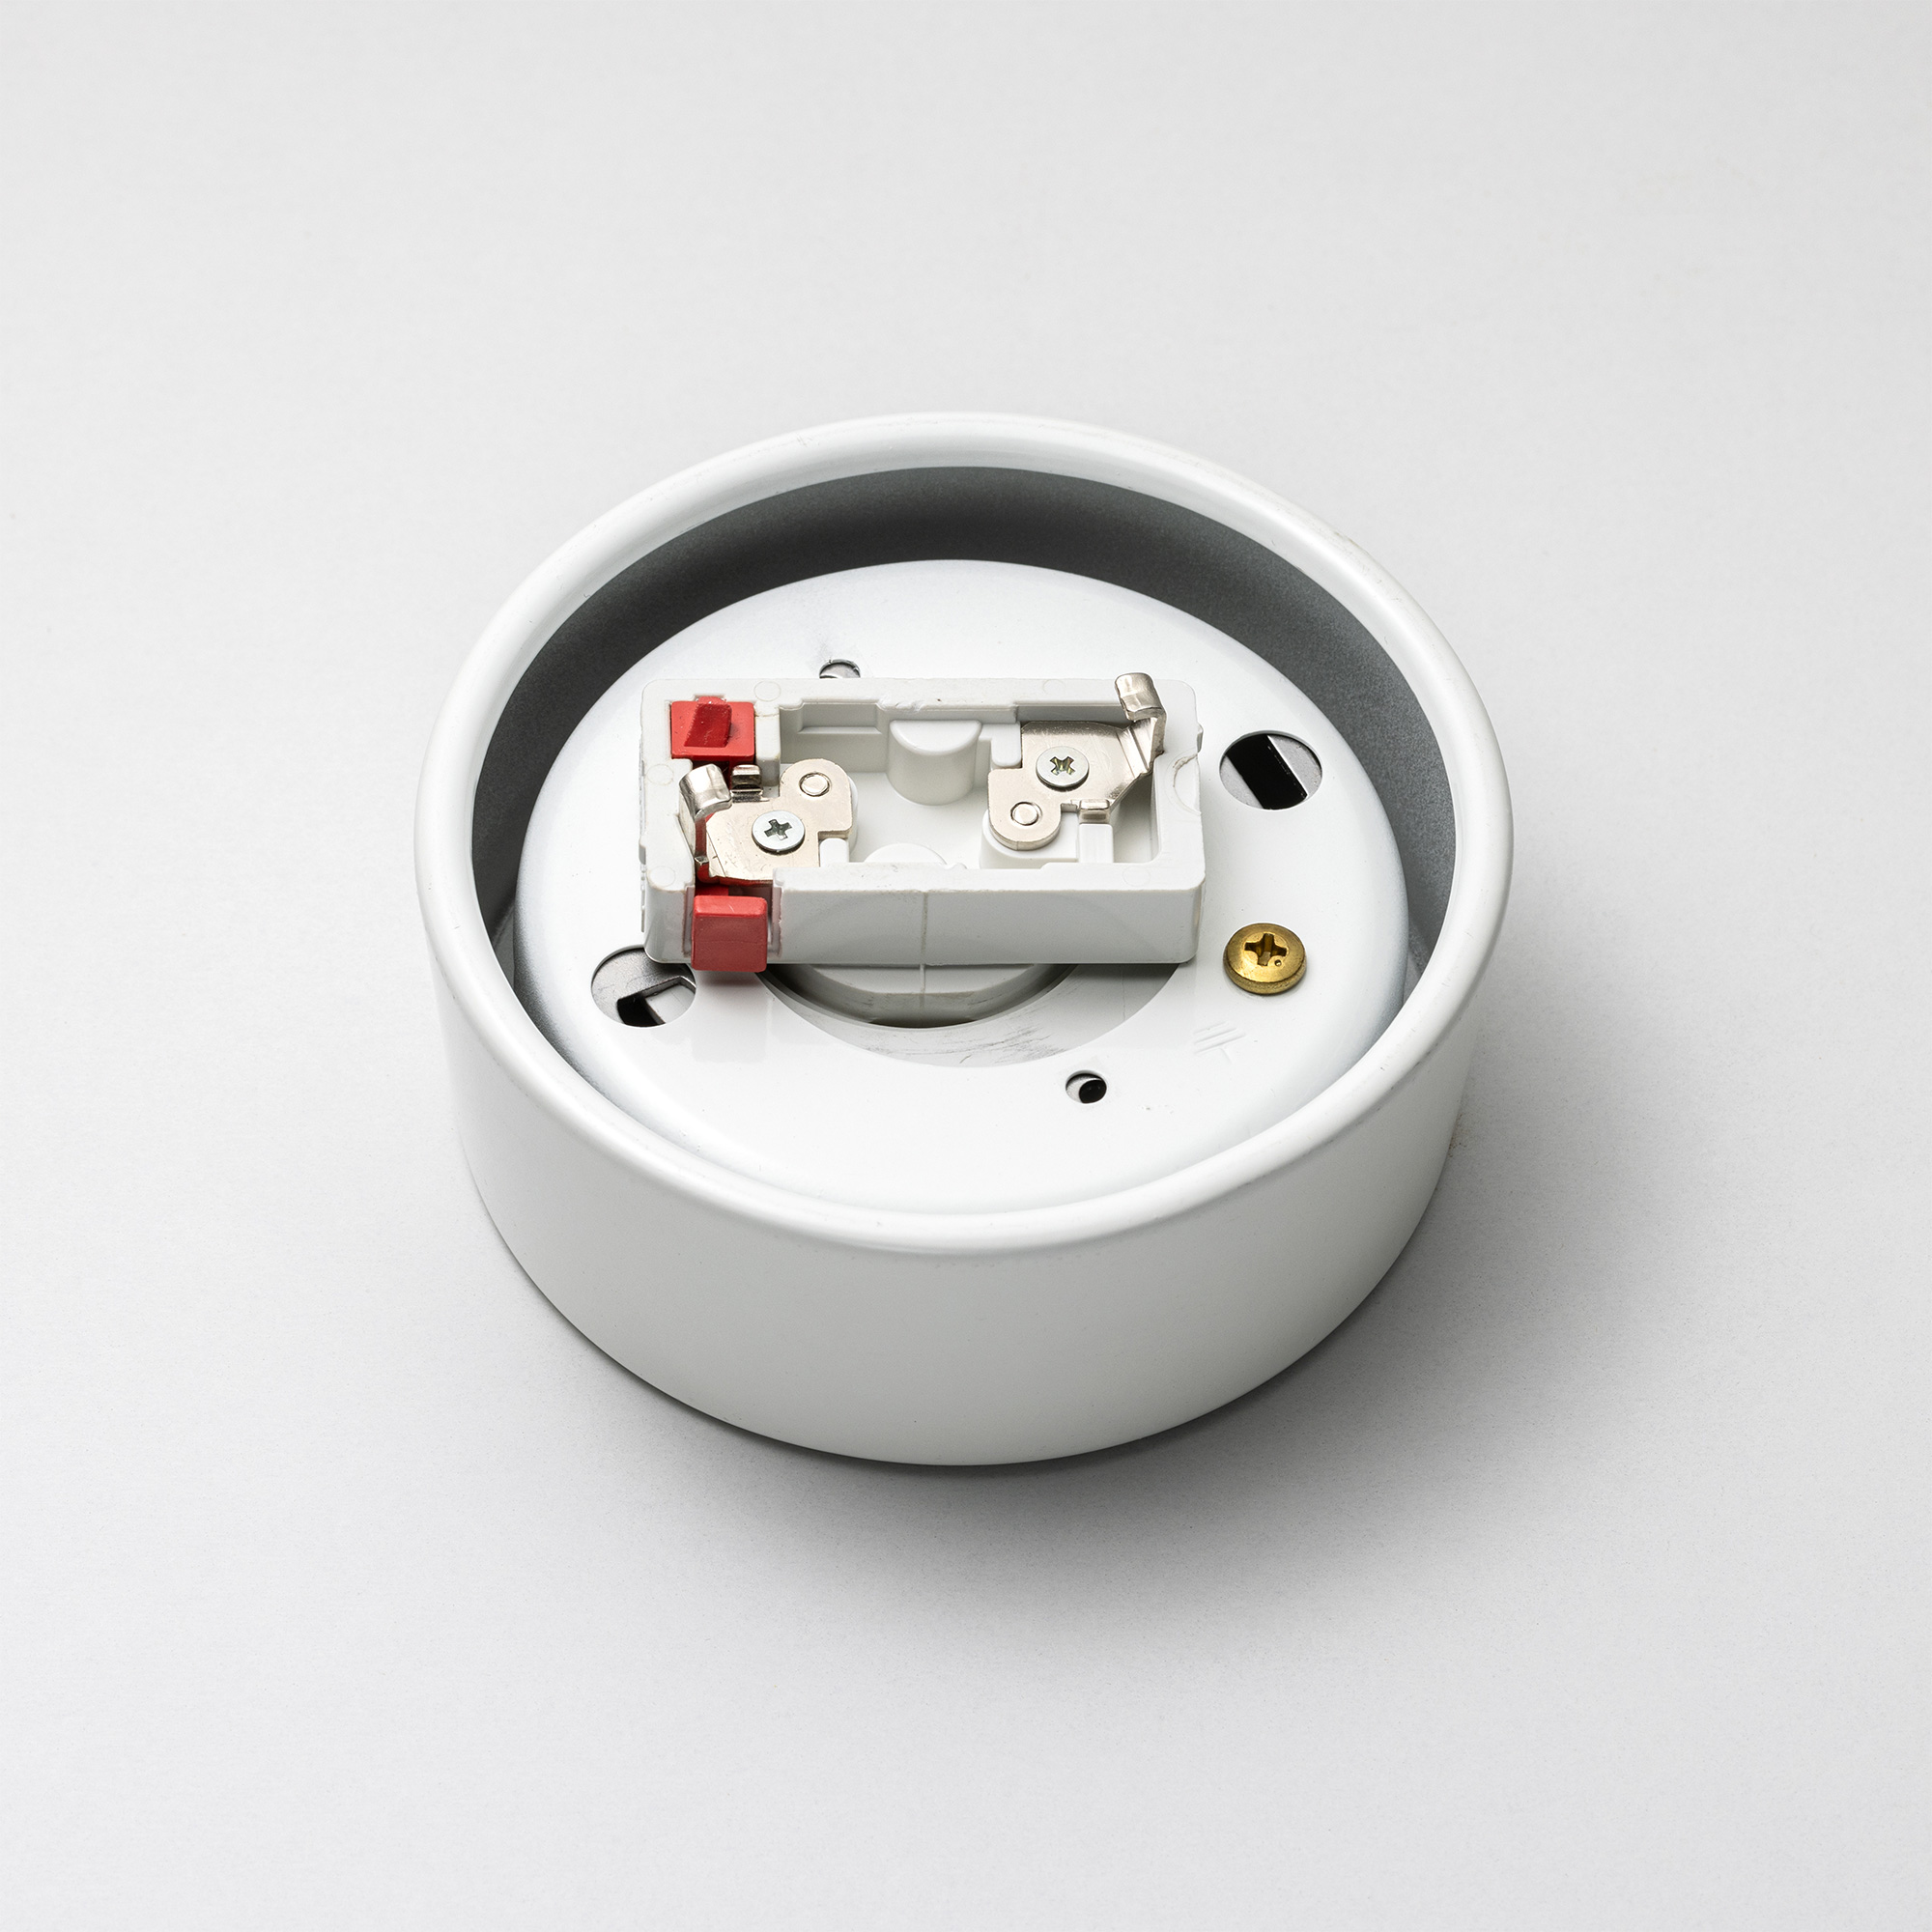 メタルラウンジライト アルミ 乳白ボール（引掛） LT-PD018-03-G141 ソケットホルダーのシーリングキャップ側。赤い部分が取り外しボタンです。